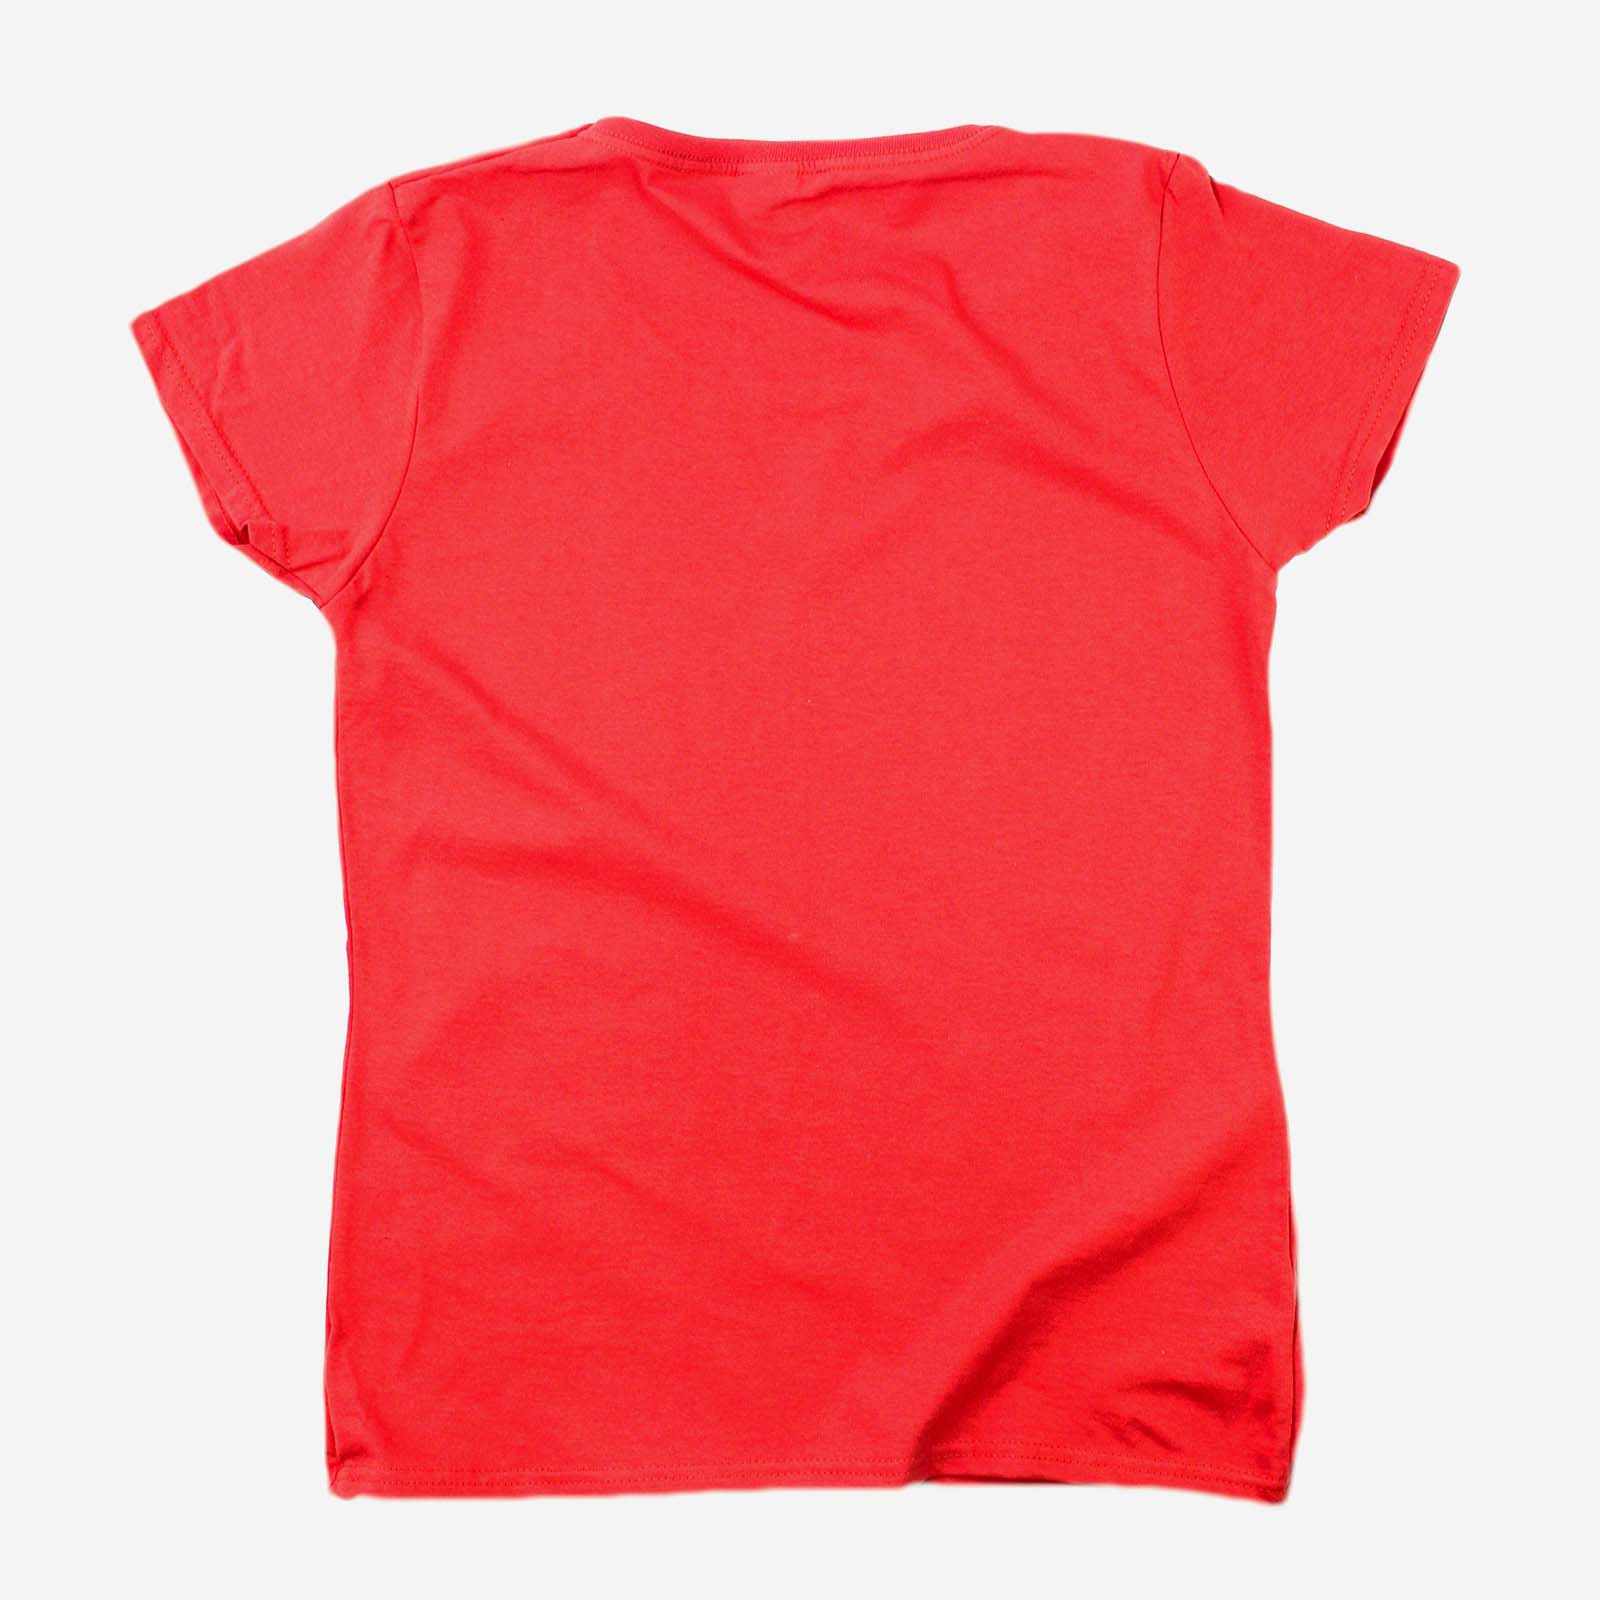 Drôle Nouveauté Tops T-shirt femme tee tshirt-Sécurité Glow in the Dark